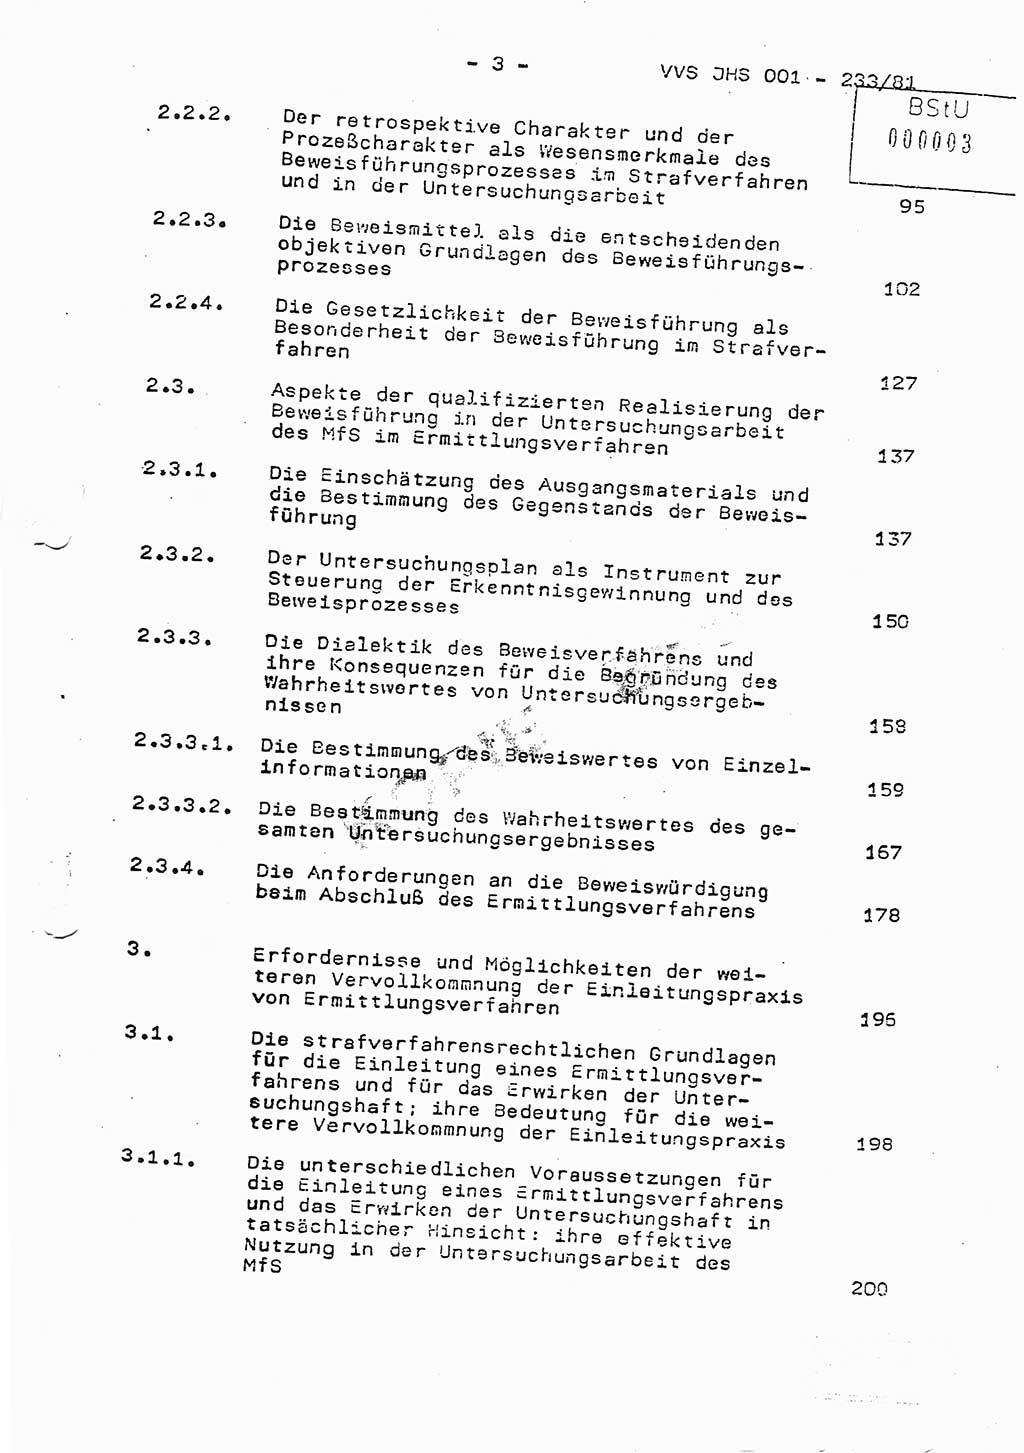 Dissertation Oberstleutnant Horst Zank (JHS), Oberstleutnant Dr. Karl-Heinz Knoblauch (JHS), Oberstleutnant Gustav-Adolf Kowalewski (HA Ⅸ), Oberstleutnant Wolfgang Plötner (HA Ⅸ), Ministerium für Staatssicherheit (MfS) [Deutsche Demokratische Republik (DDR)], Juristische Hochschule (JHS), Vertrauliche Verschlußsache (VVS) o001-233/81, Potsdam 1981, Blatt 3 (Diss. MfS DDR JHS VVS o001-233/81 1981, Bl. 3)